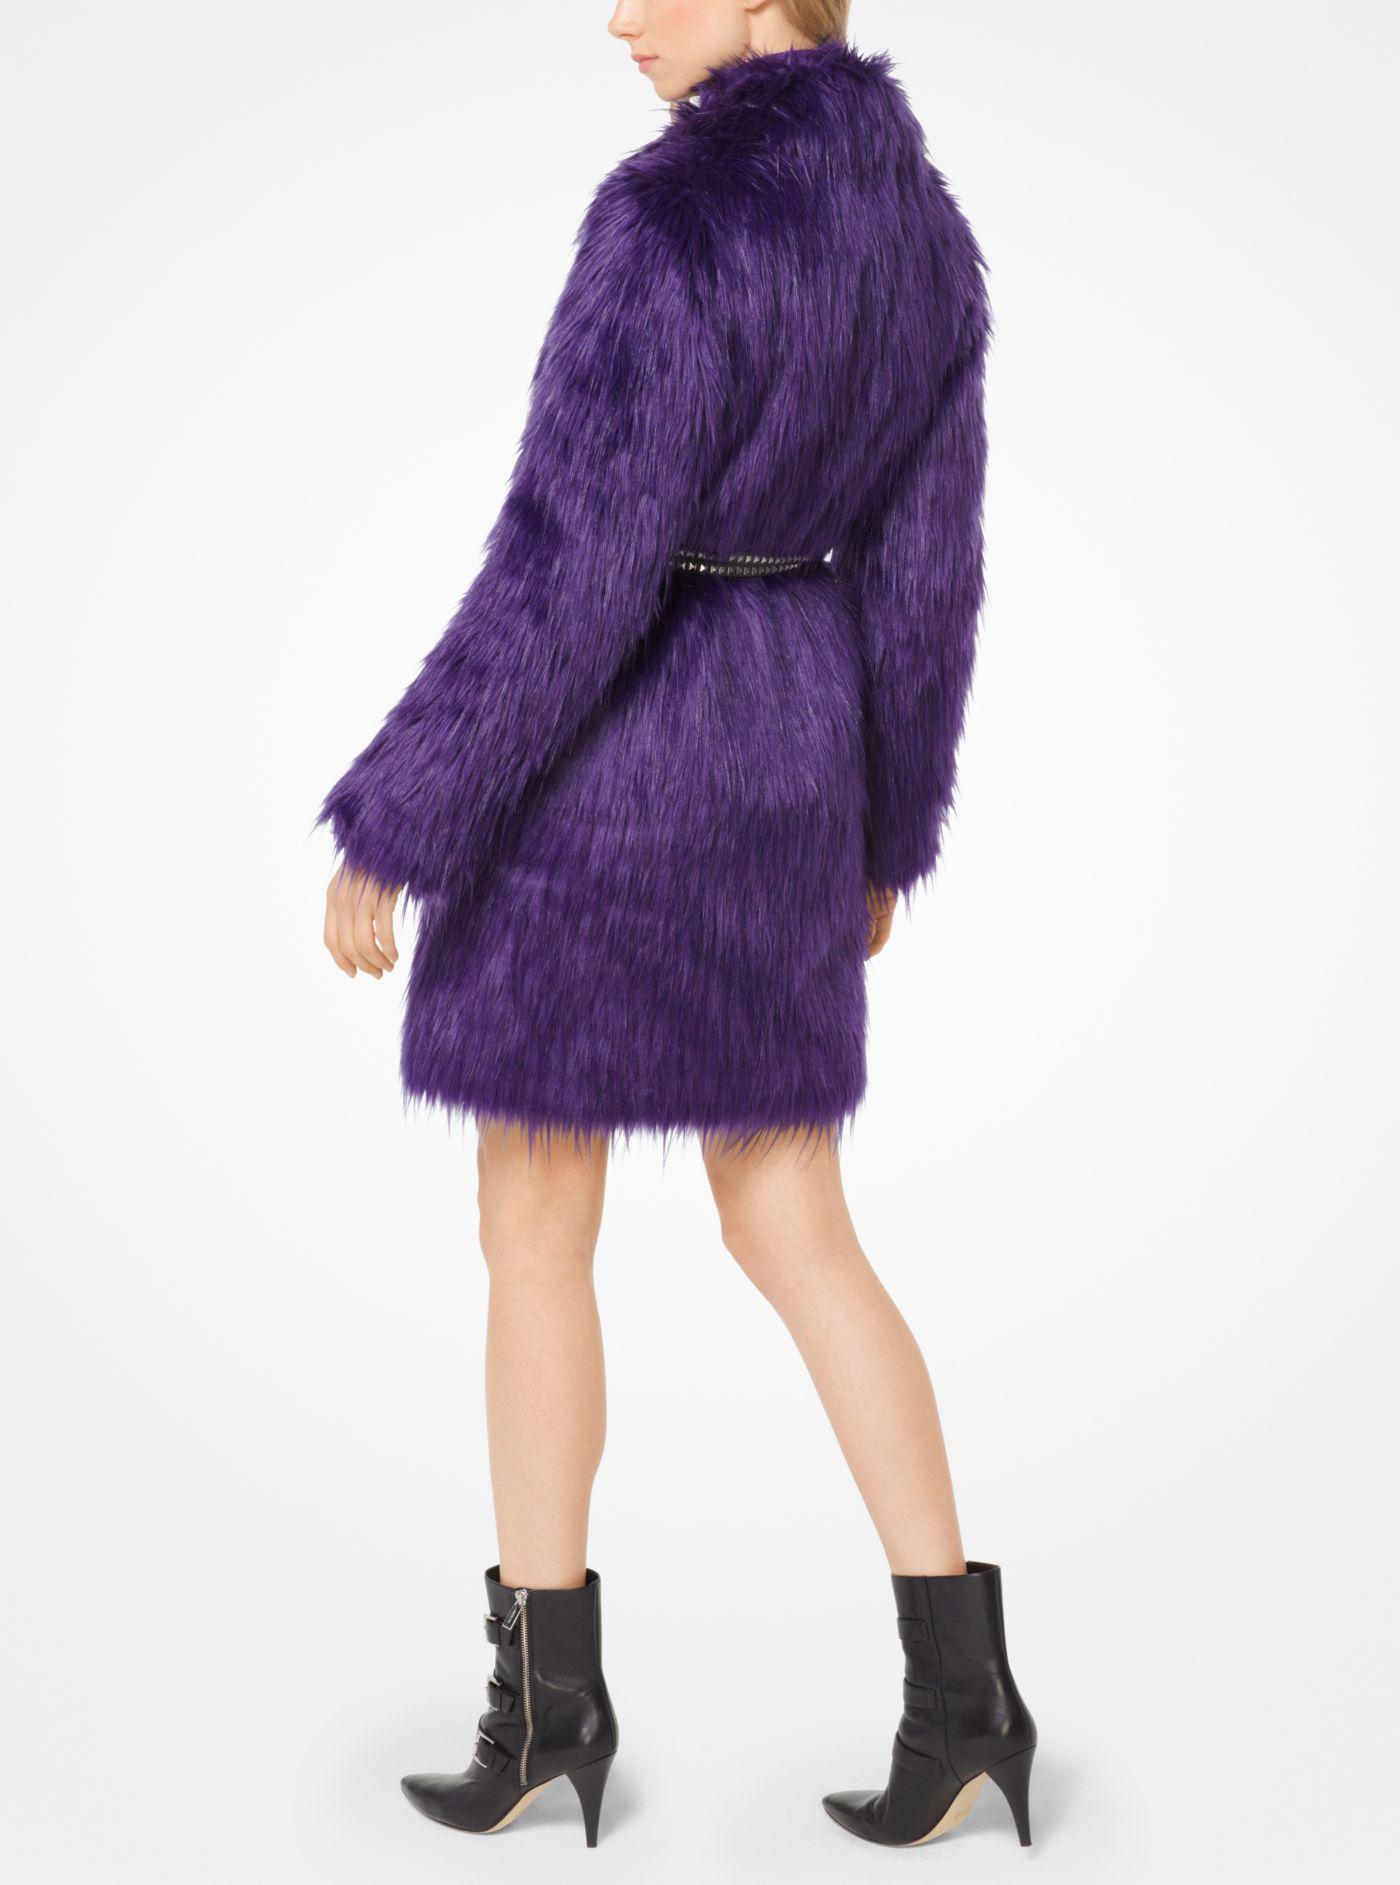 Michael Kors Belted Faux-fur Coat in Iris (Purple) | Lyst